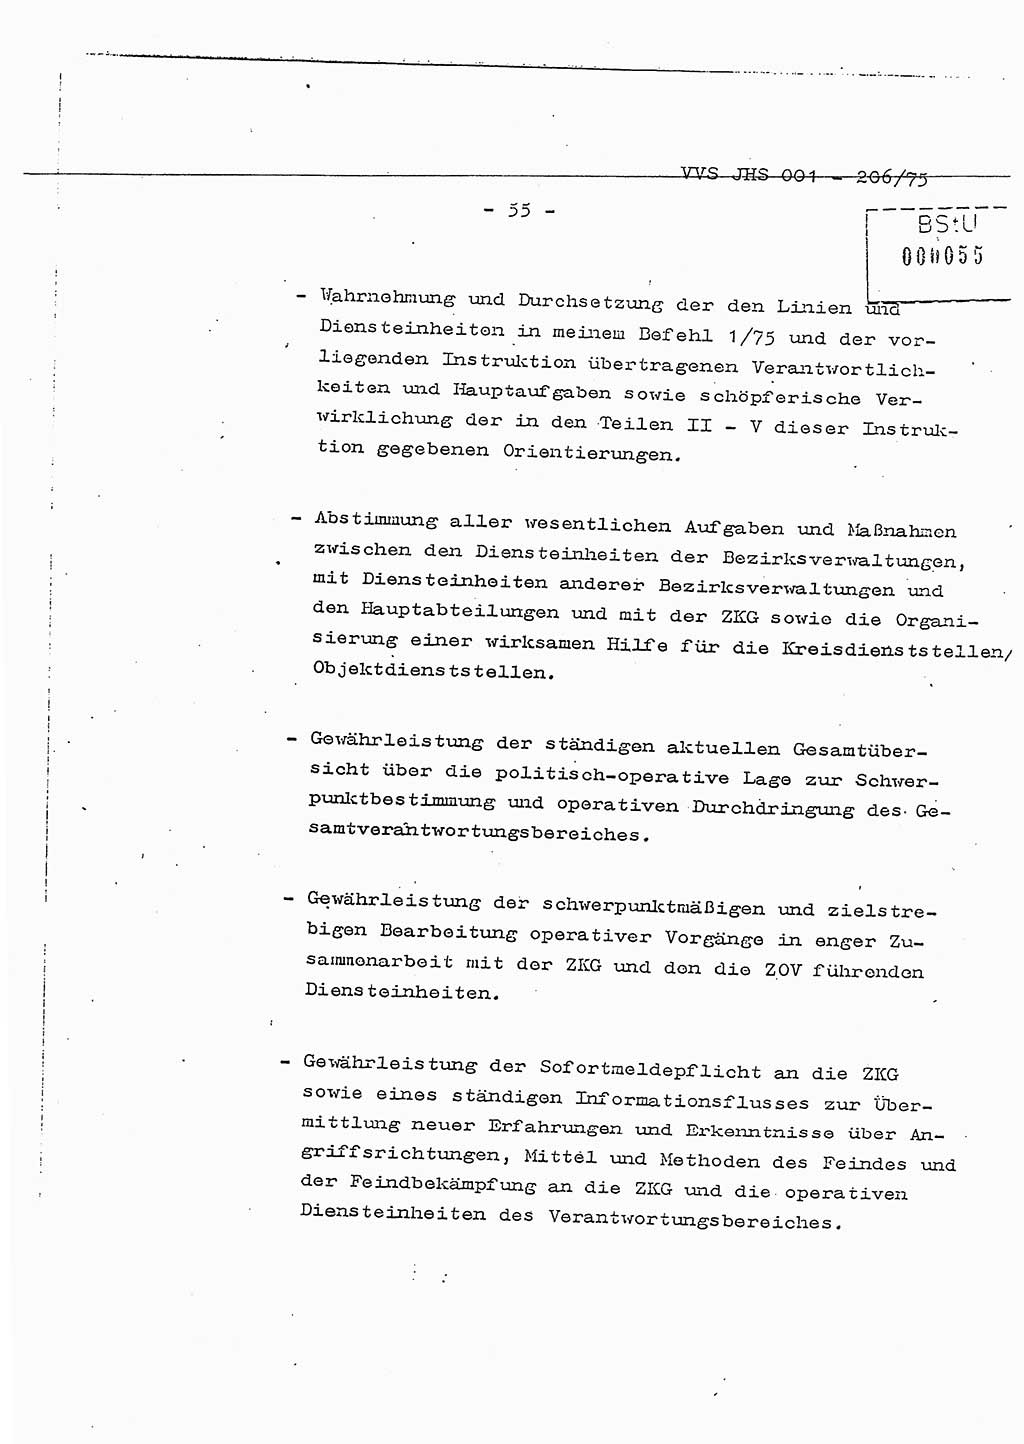 Dissertation Generalmajor Manfred Hummitzsch (Leiter der BV Leipzig), Generalmajor Heinz Fiedler (HA Ⅵ), Oberst Rolf Fister (HA Ⅸ), Ministerium für Staatssicherheit (MfS) [Deutsche Demokratische Republik (DDR)], Juristische Hochschule (JHS), Vertrauliche Verschlußsache (VVS) 001-206/75, Potsdam 1975, Seite 55 (Diss. MfS DDR JHS VVS 001-206/75 1975, S. 55)